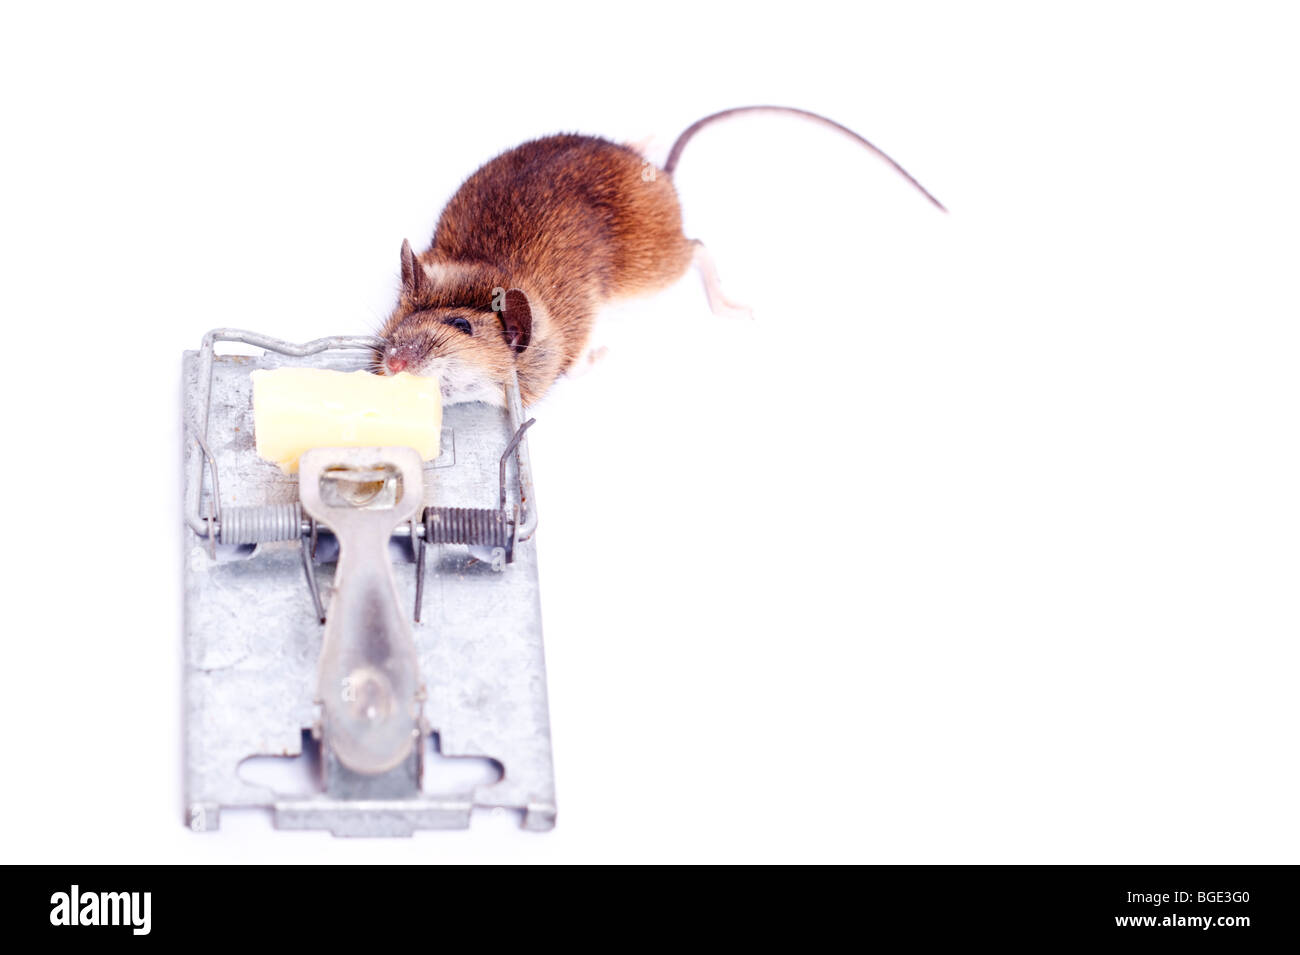 Une souris morte après avoir été pris dans un piège à souris sur un fond blanc Banque D'Images